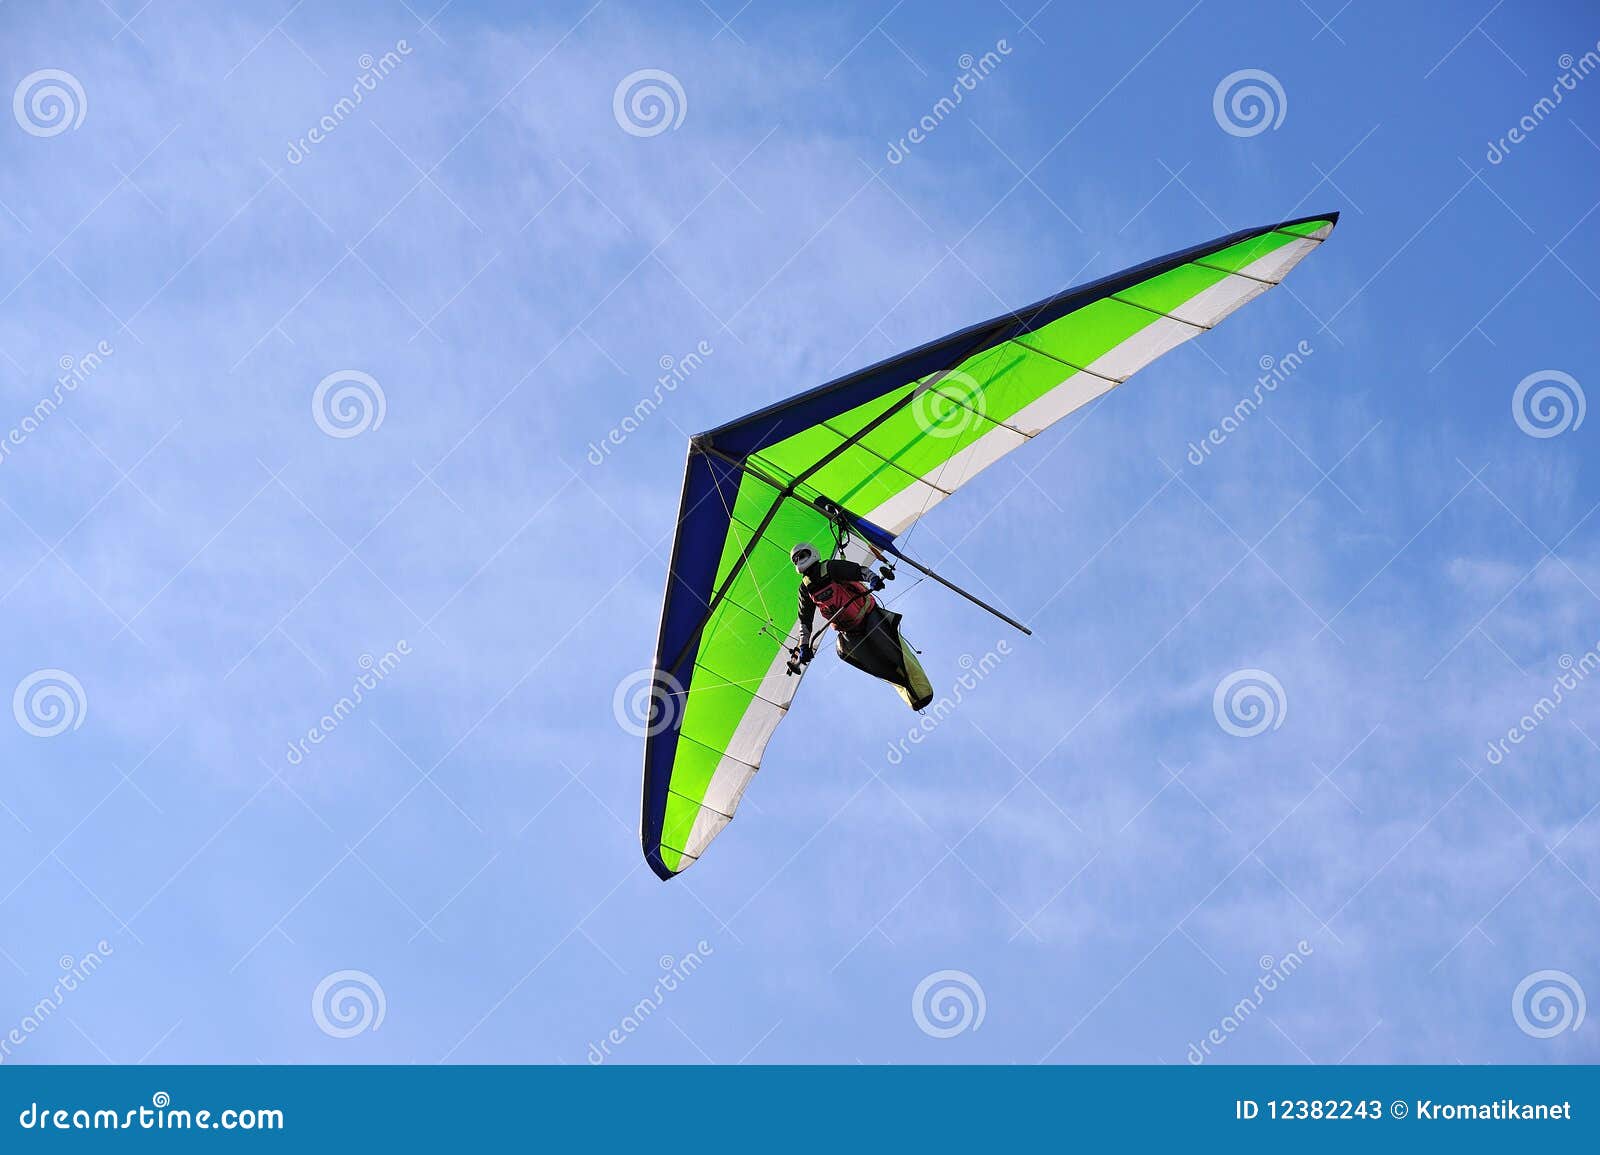 gliding flight deltaplano